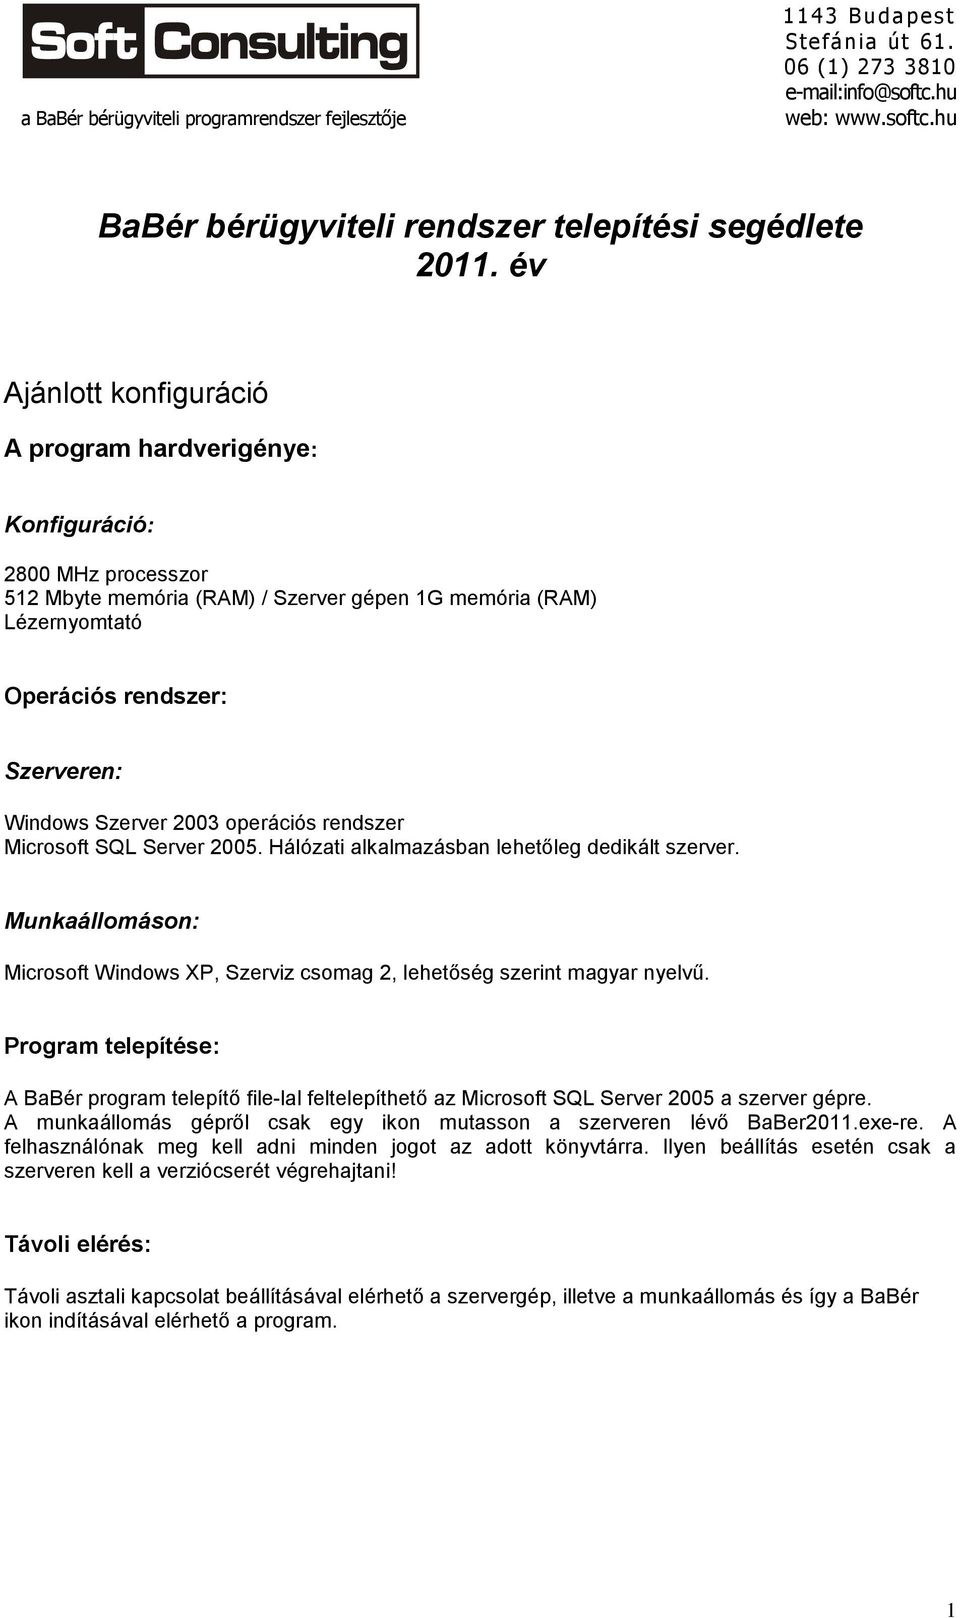 Szerver 2003 operációs rendszer Microsoft SQL Server 2005. Hálózati alkalmazásban lehetőleg dedikált szerver. Munkaállomáson: Microsoft Windows XP, Szerviz csomag 2, lehetőség szerint magyar nyelvű.